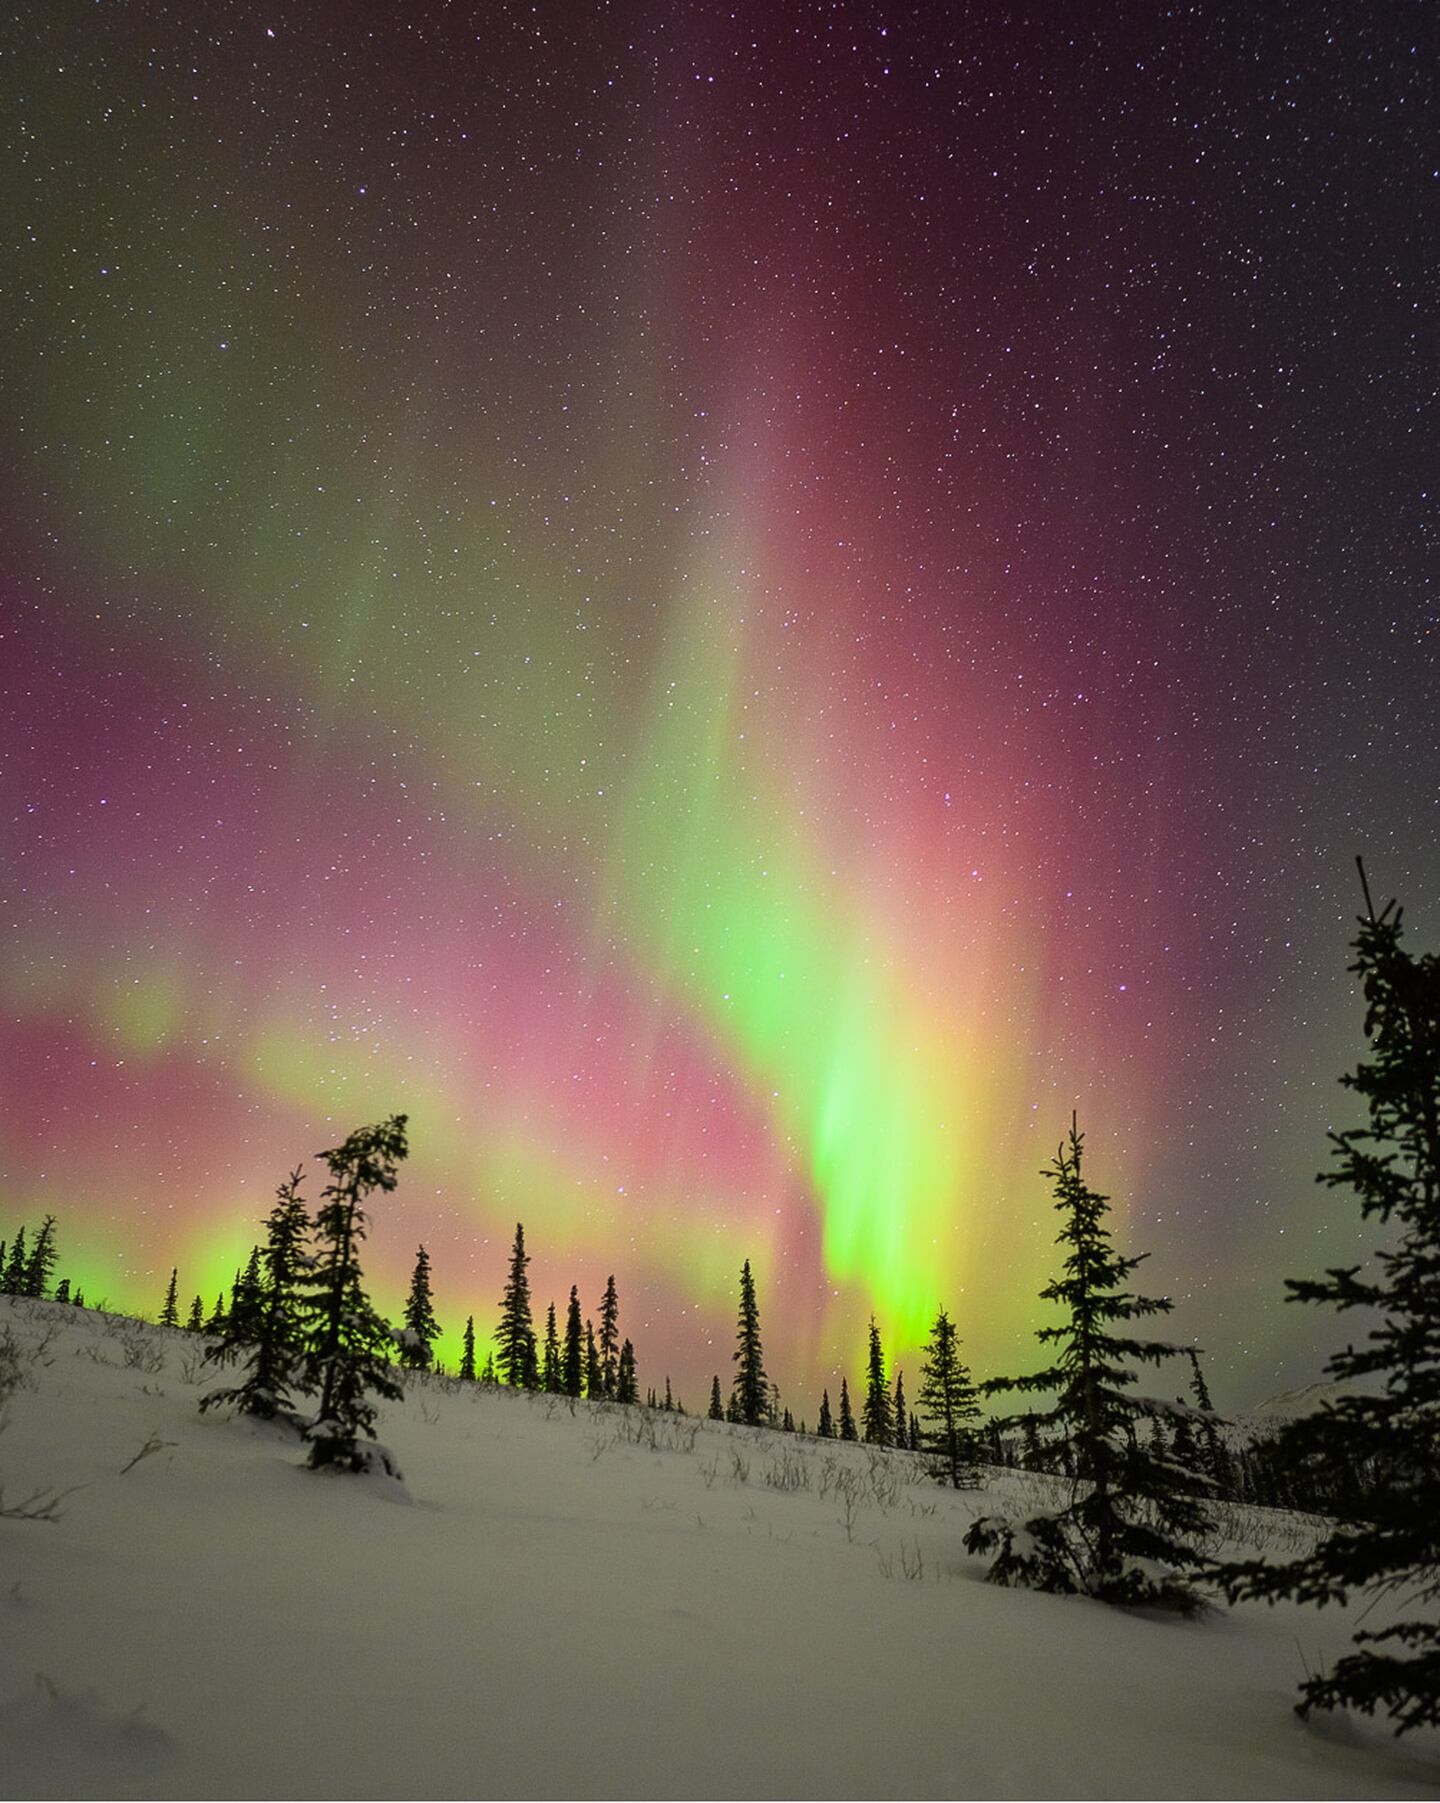 The aurora borealis, pictured near Fairbanks